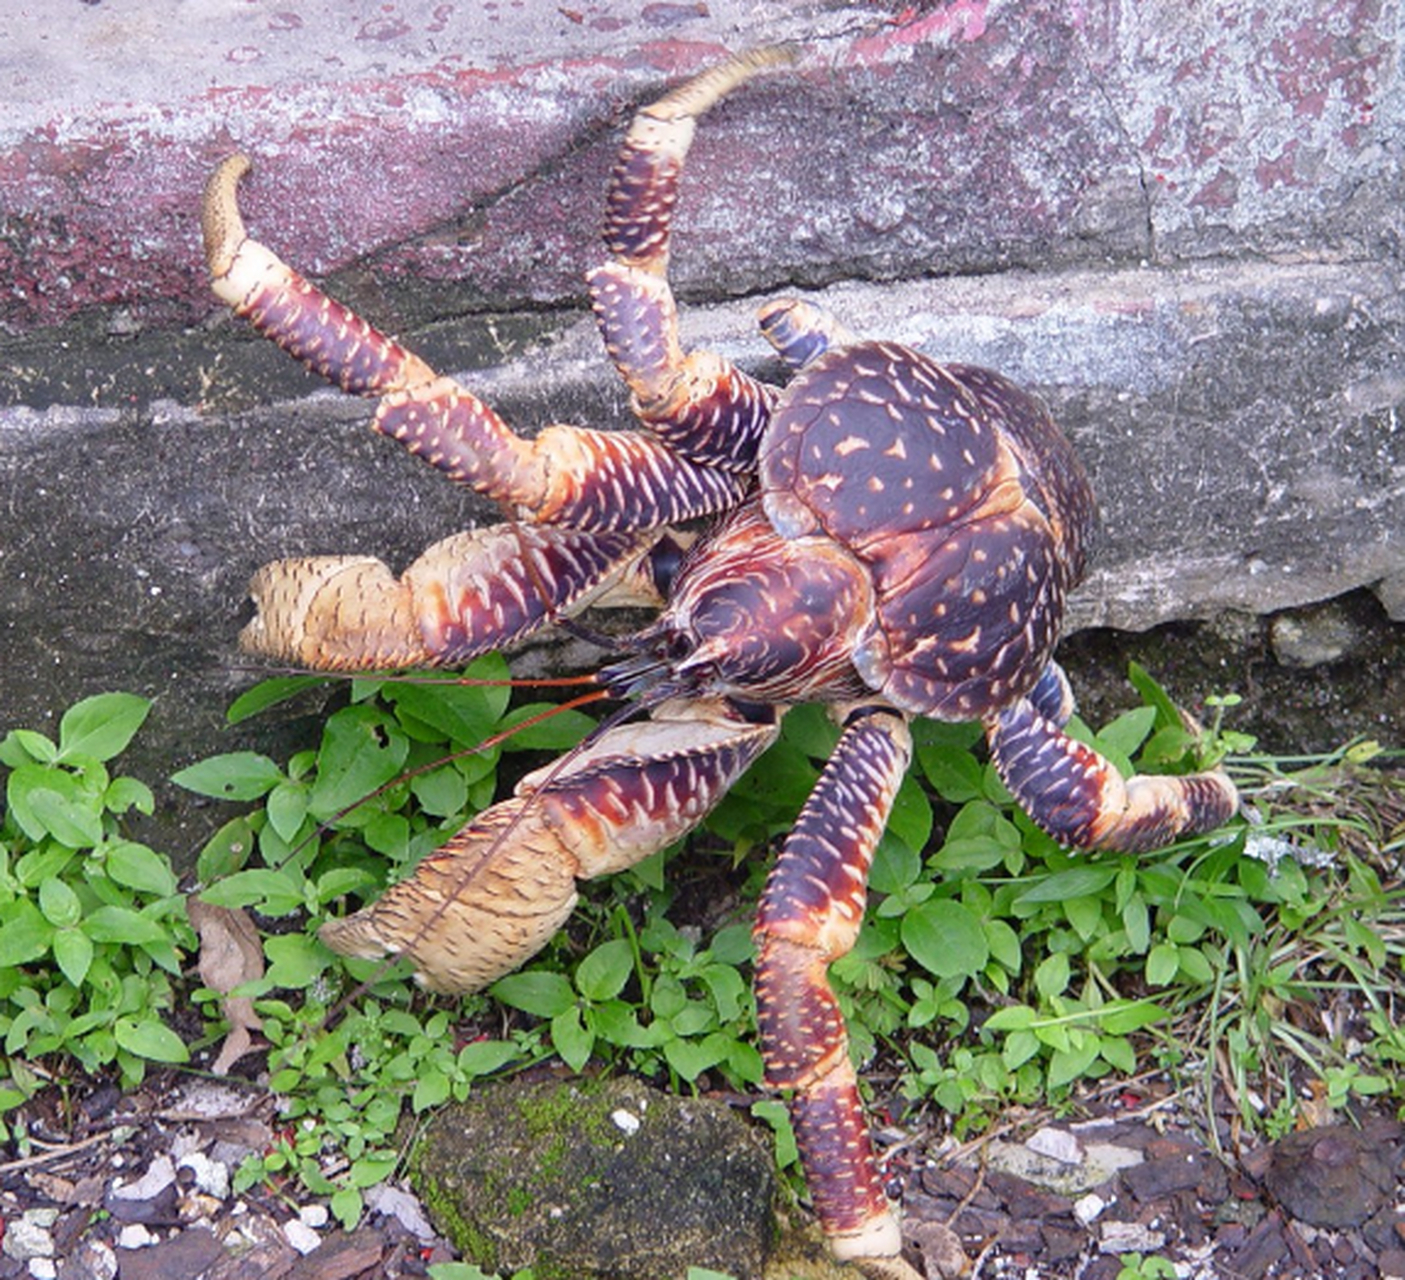 椰子蟹vs帝王蟹 蜘蛛图片